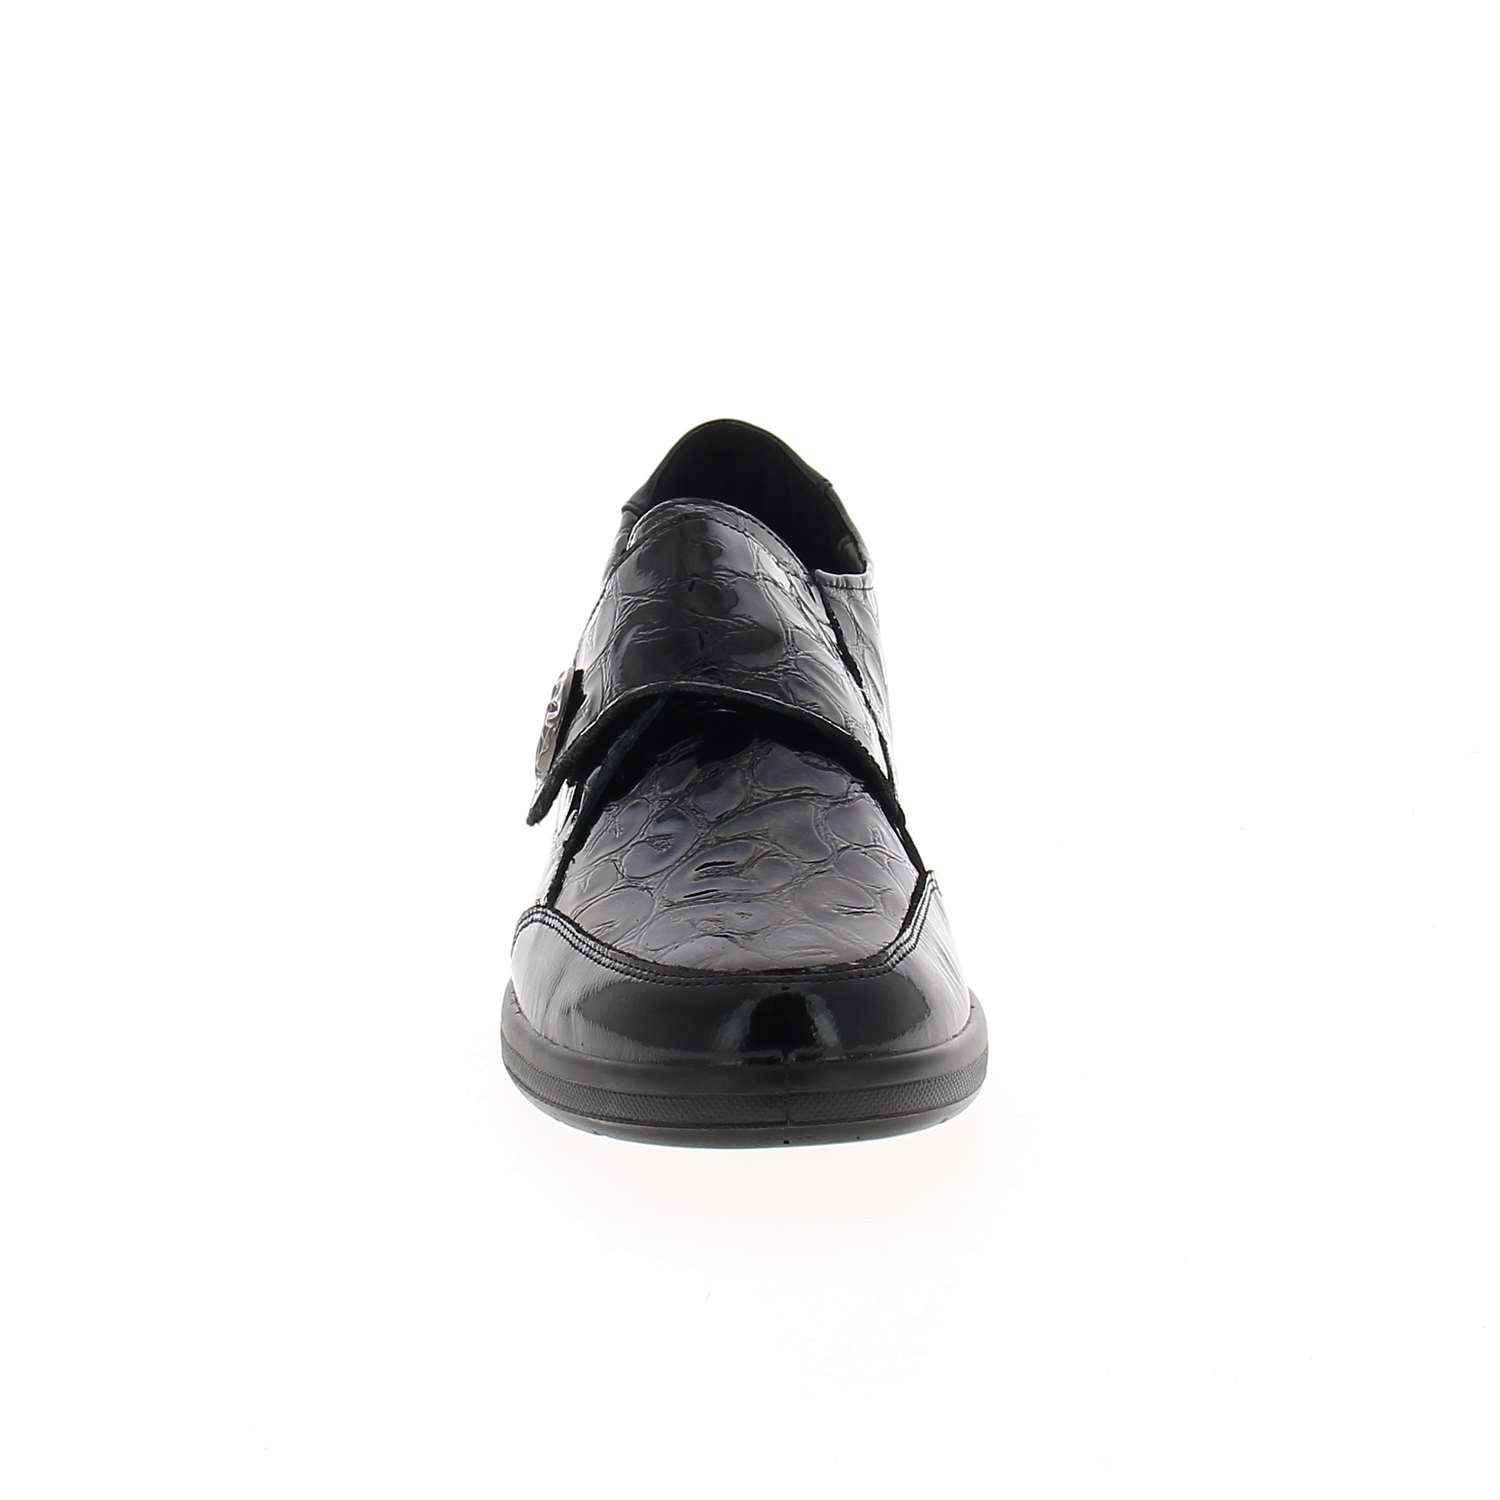 03 - DEMBA  AMO - GEP - Chaussures à lacets - Cuir verni